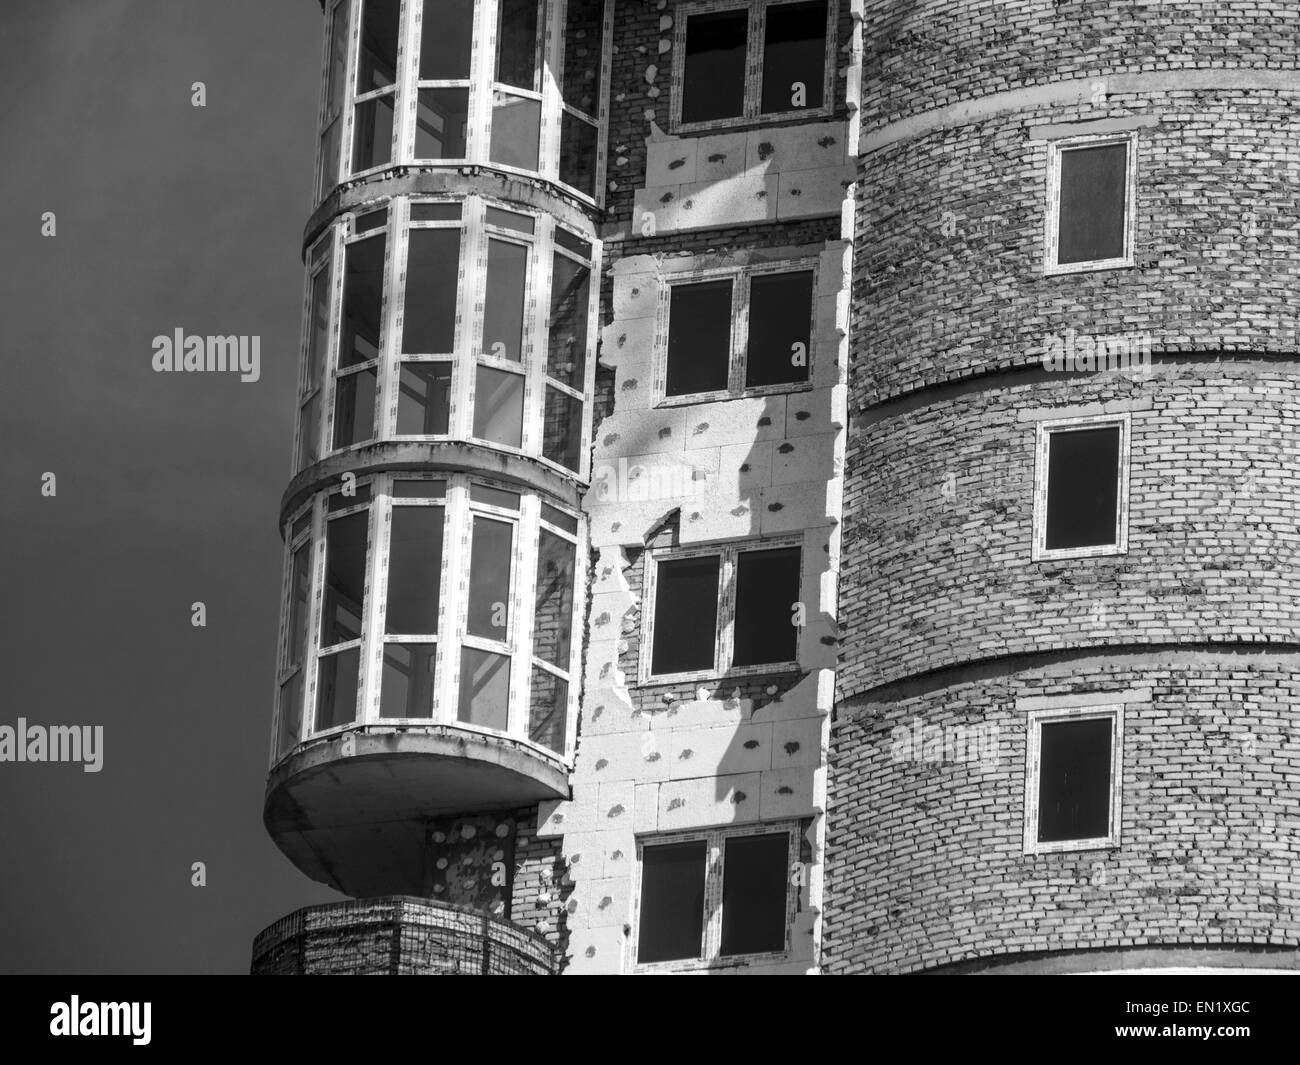 24 avril 2015 - isolation thermique d'un immeuble à appartements décoratifs en polyuréthane (crédit Image : © Zuma sur le fil) Banque D'Images